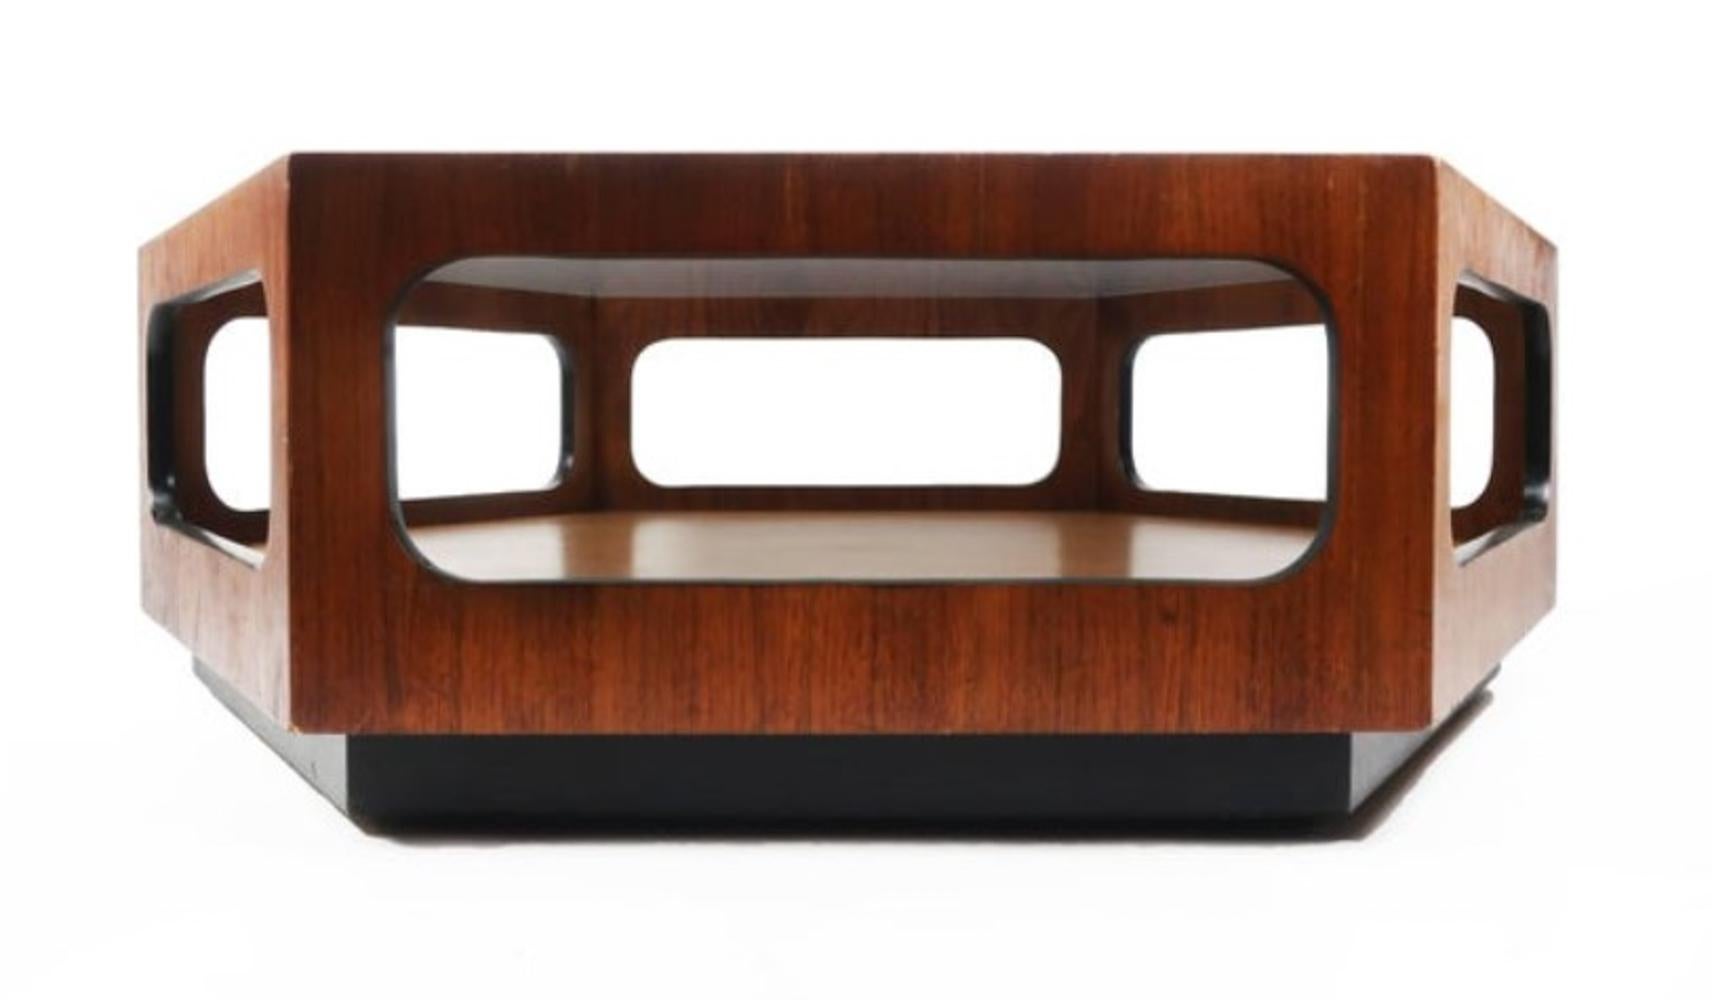 Conçue et fabriquée dans les années 1970 par Lane Furniture, cette belle table basse se caractérise par une excellente construction et un look super épuré et moderne. Composé de 6 panneaux de noyer assemblés pour former un hexagone, chaque côté